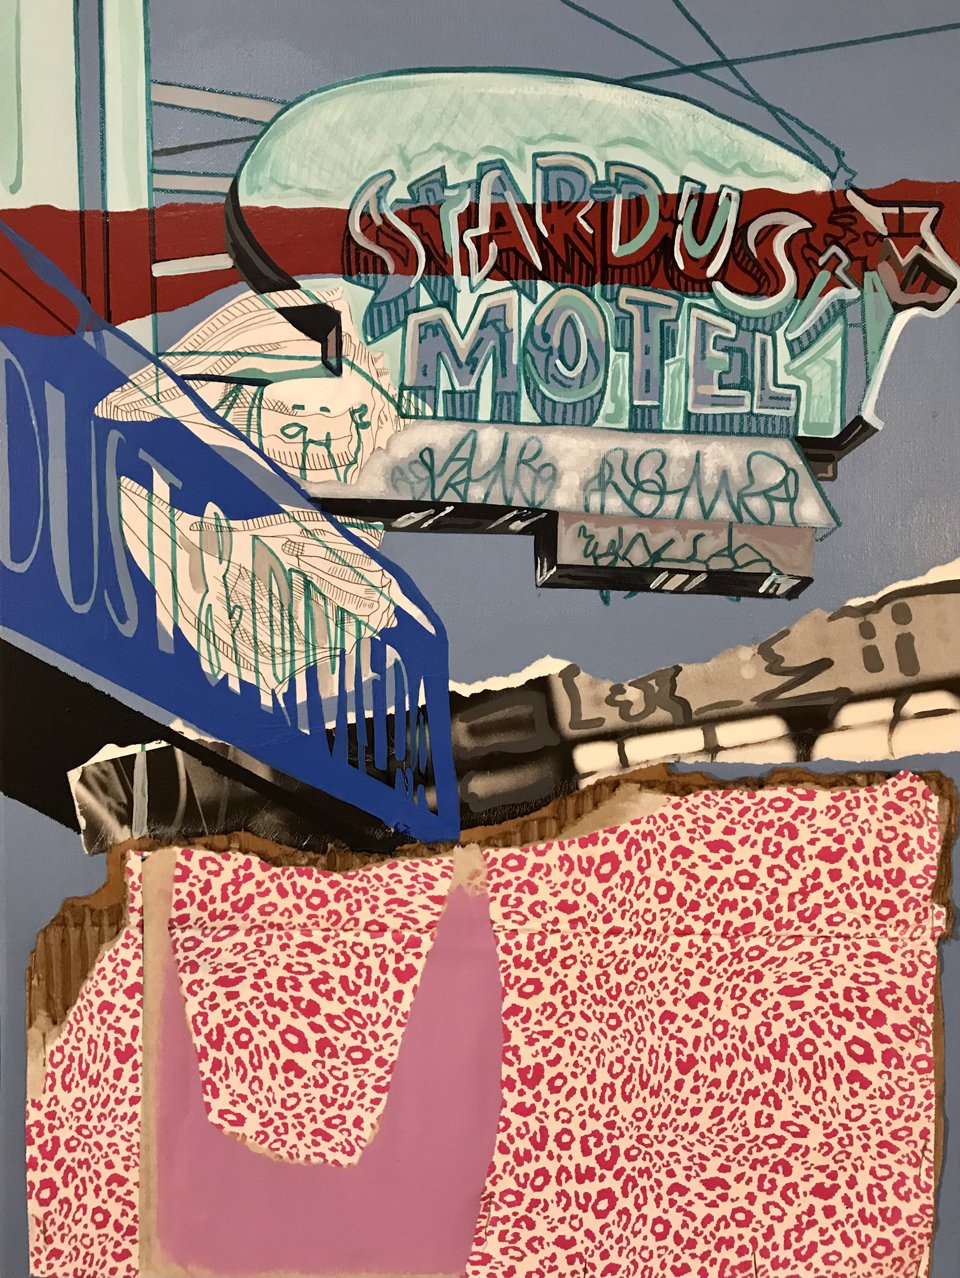 Danielle Cartier, "Stardust Motel"